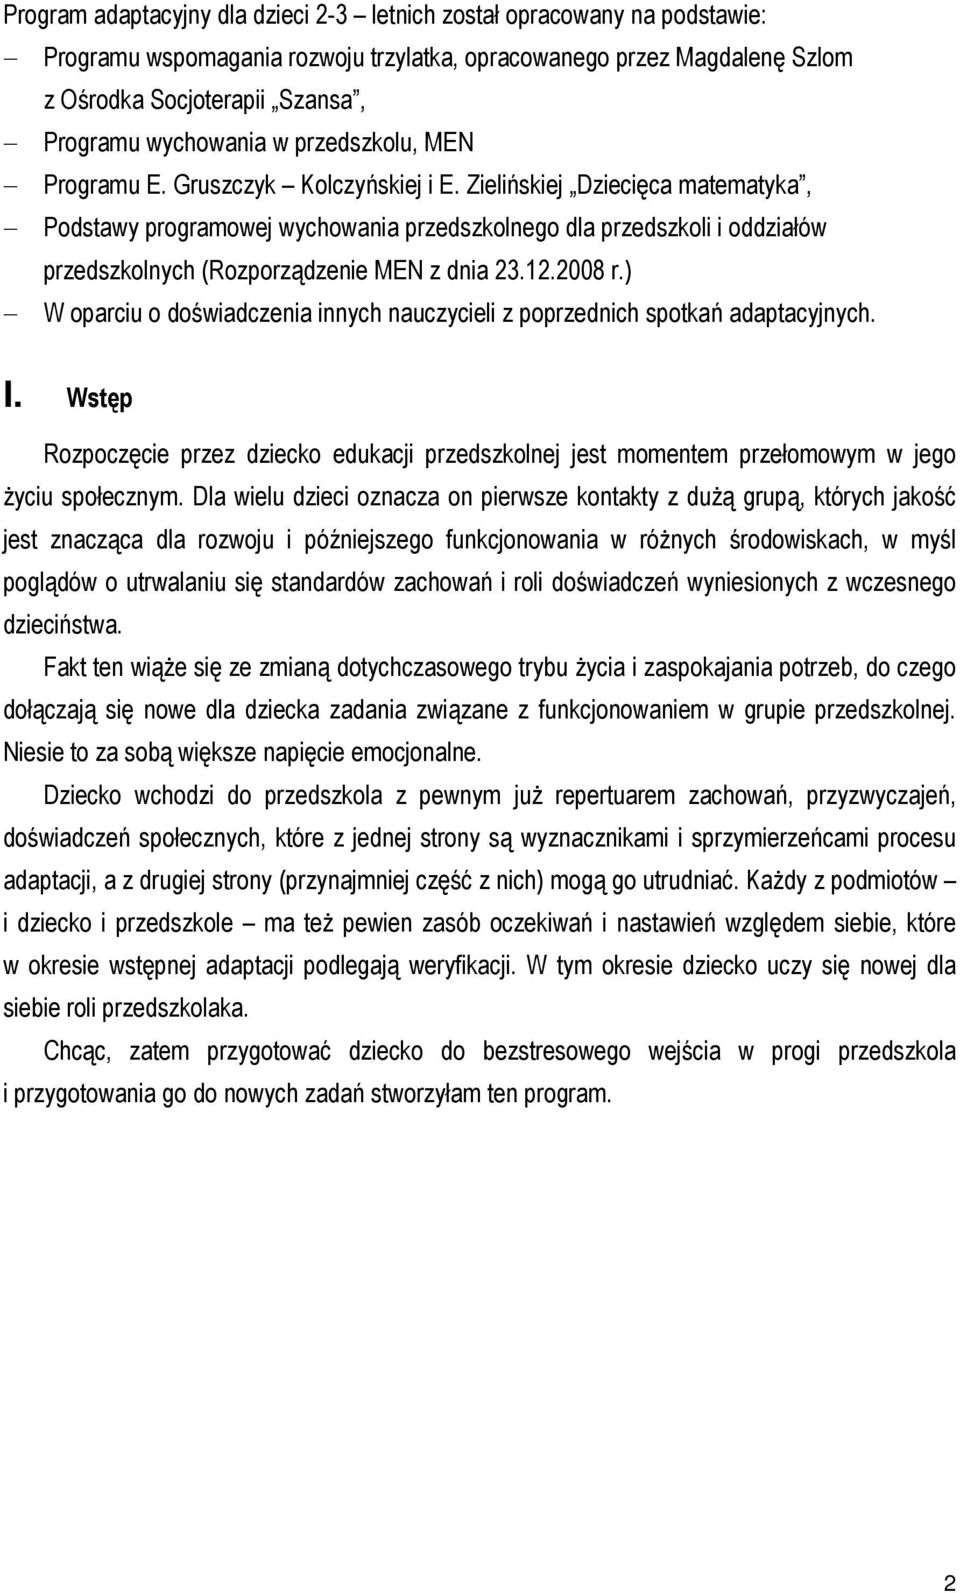 Zielińskiej Dziecięca matematyka, Podstawy programowej wychowania przedszkolnego dla przedszkoli i oddziałów przedszkolnych (Rozporządzenie MEN z dnia 23.12.2008 r.